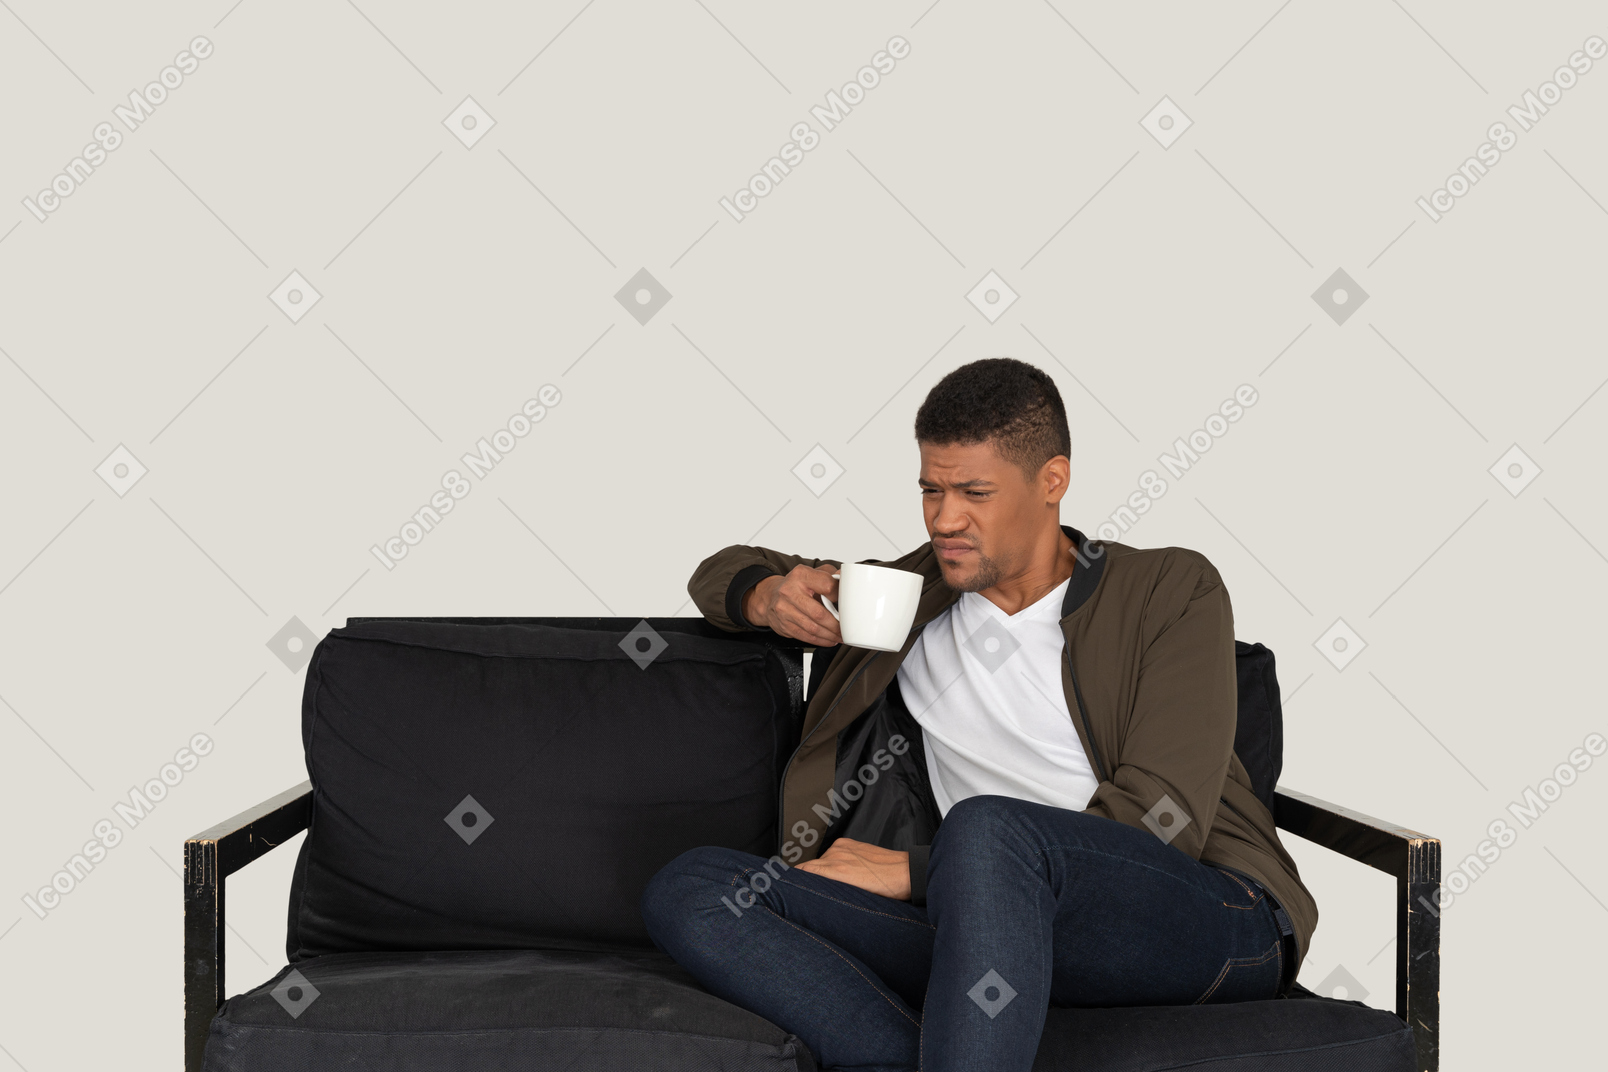 Vue de face d'un jeune homme grimaçant assis sur un canapé avec une tasse de café